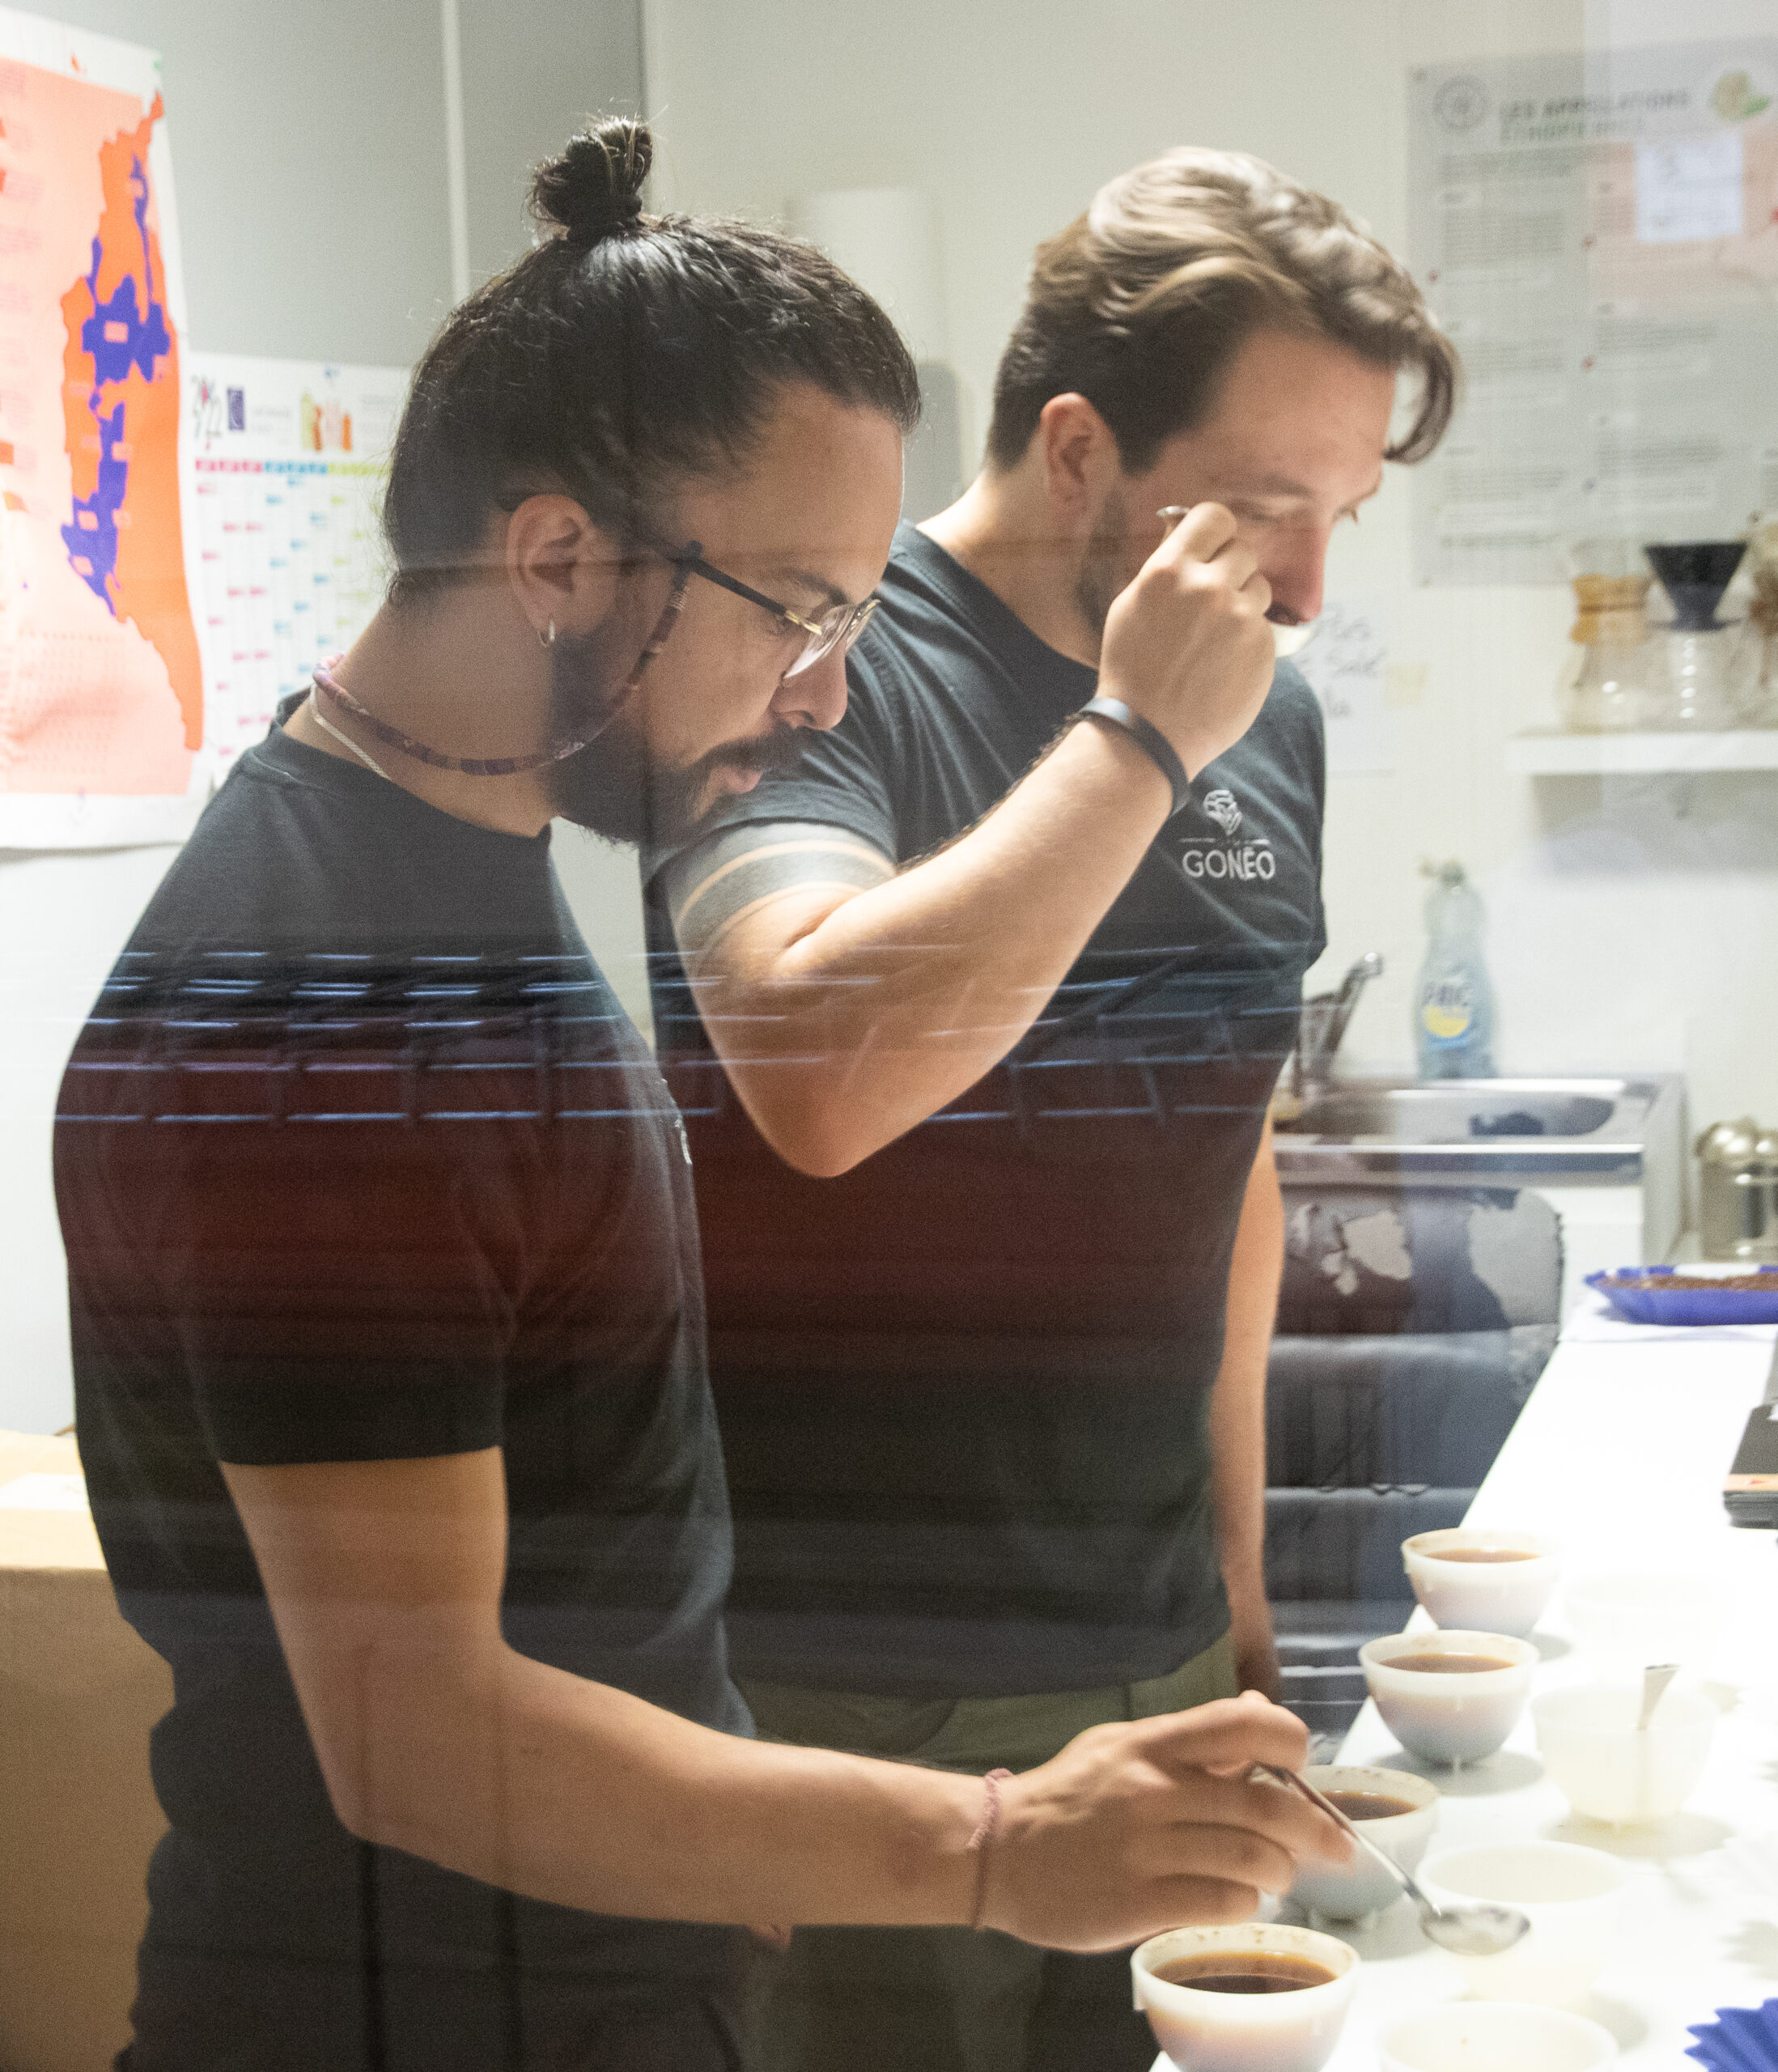 Felipe et Guillaume, les deux maîtres torréfacteurs de Cafés Gonéo, en train de faire un cupping